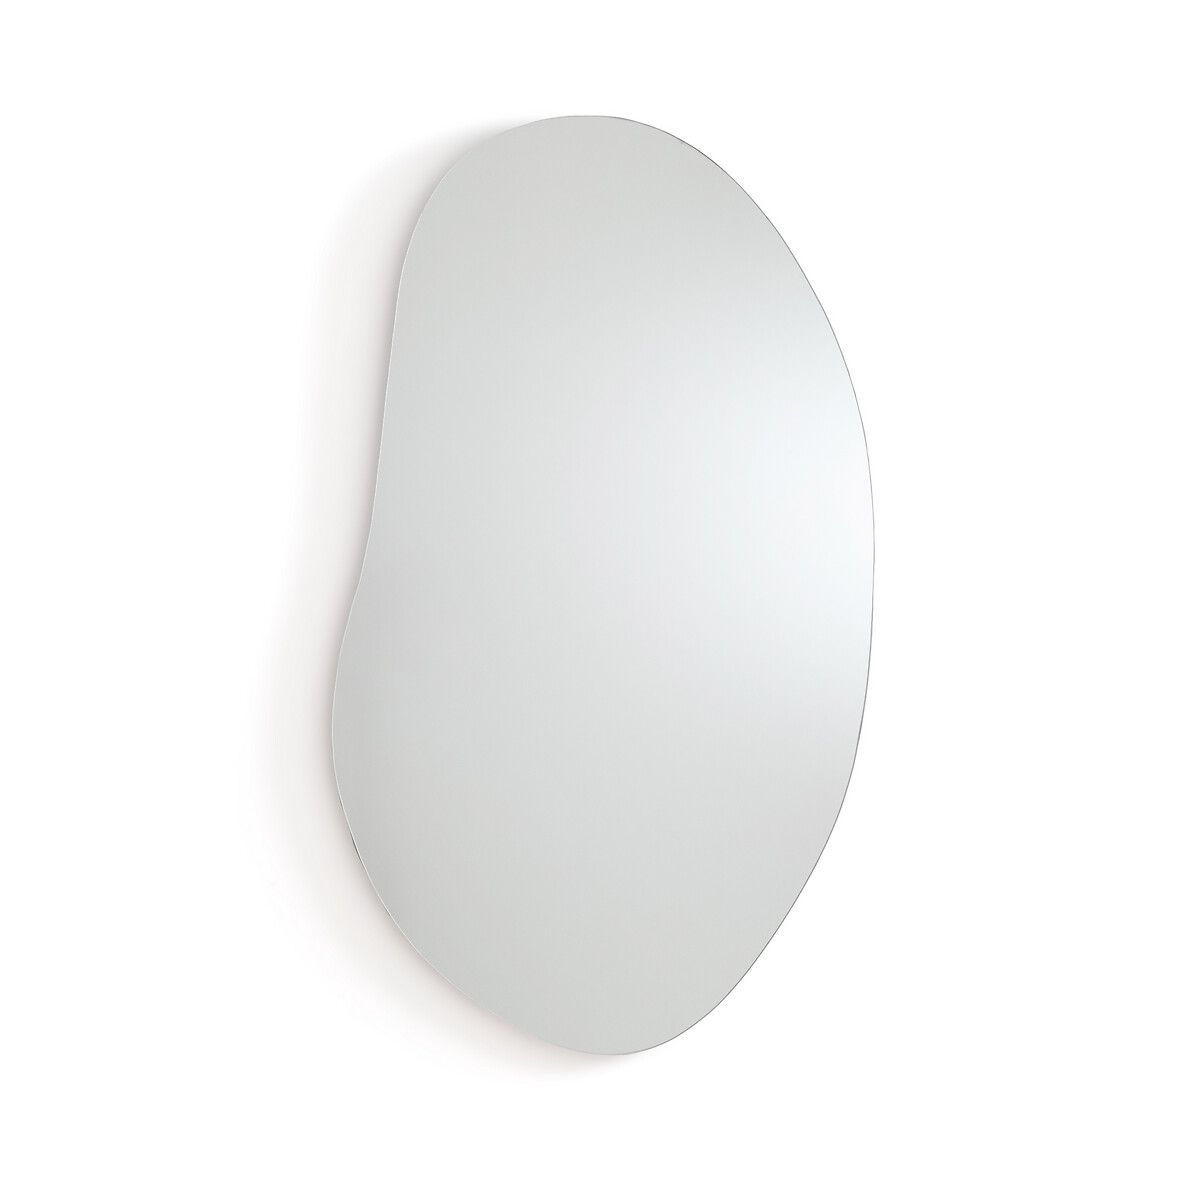 Biface Organically-Shaped Mirror | La Redoute (UK)